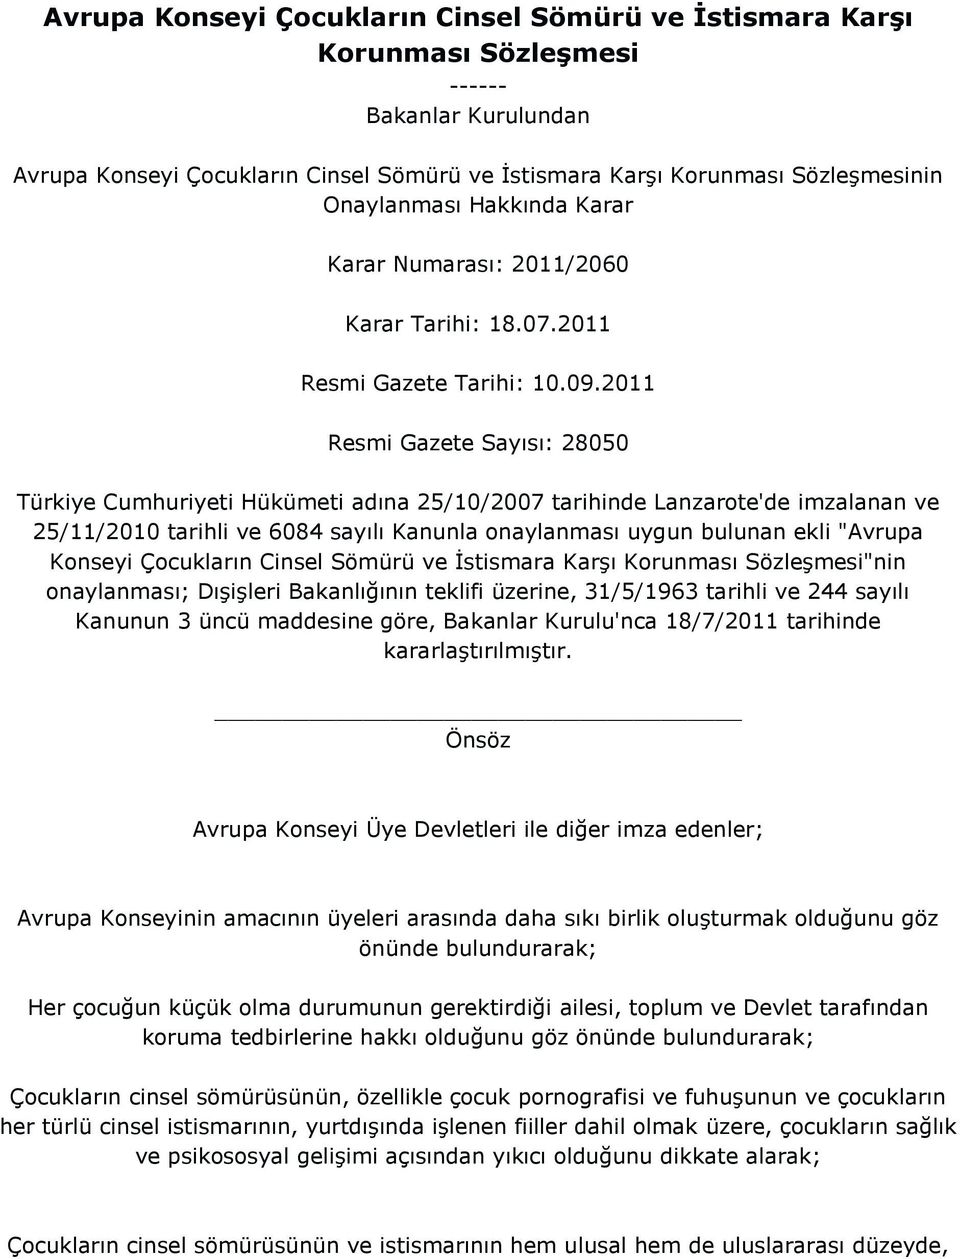 2011 Resmi Gazete Sayısı: 28050 Türkiye Cumhuriyeti Hükümeti adına 25/10/2007 tarihinde Lanzarote'de imzalanan ve 25/11/2010 tarihli ve 6084 sayılı Kanunla onaylanması uygun bulunan ekli "Avrupa